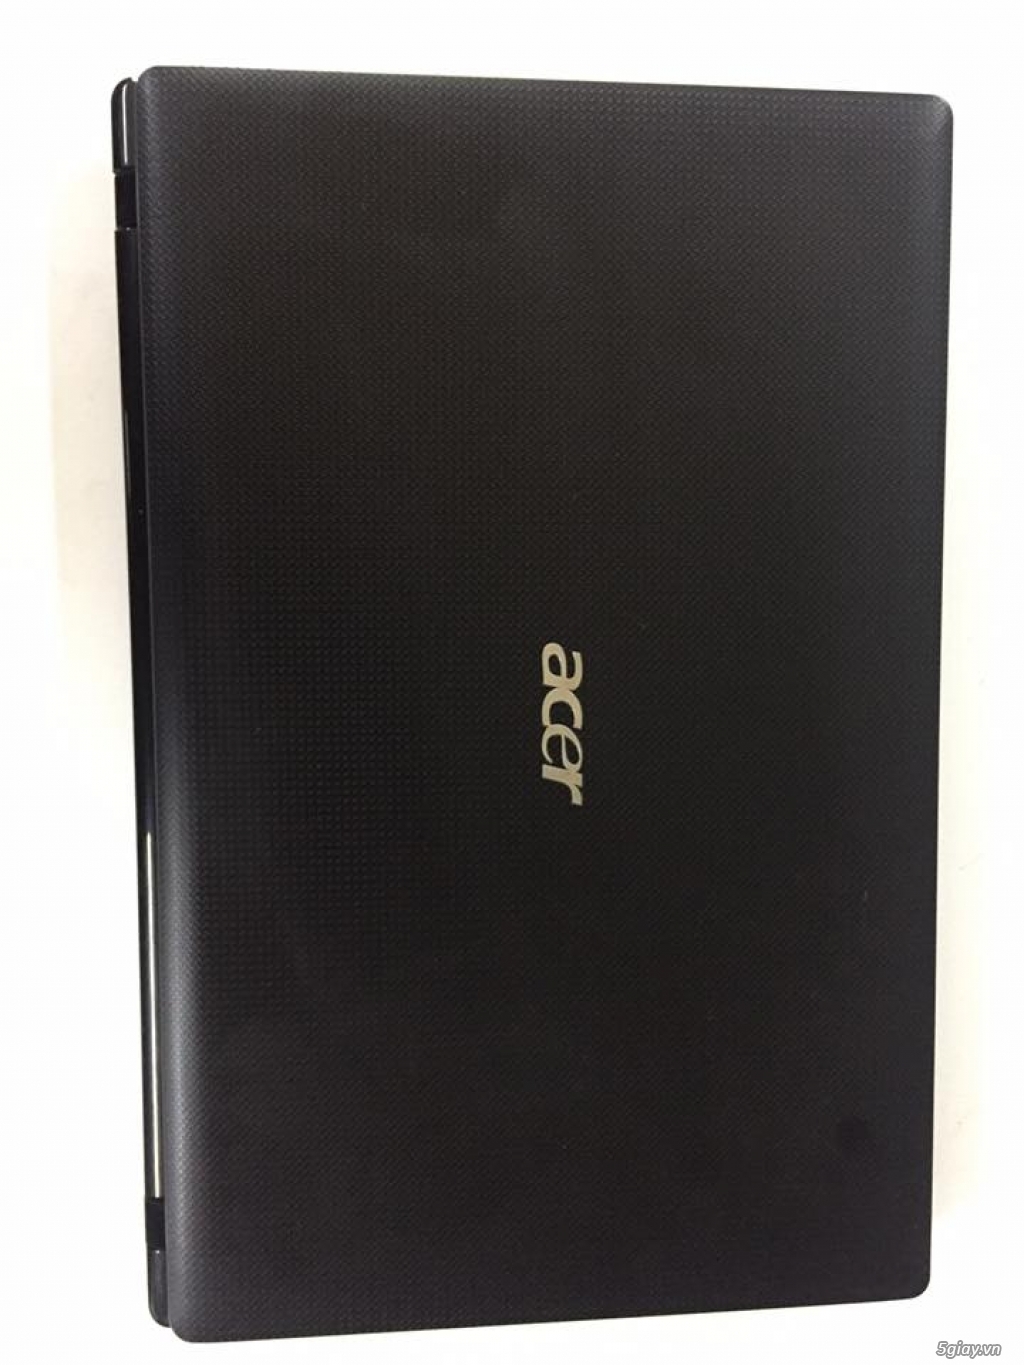 Acer aspire 5750 I5 2410M hàng mua mới bên nhật chưa sửa chửa - 1